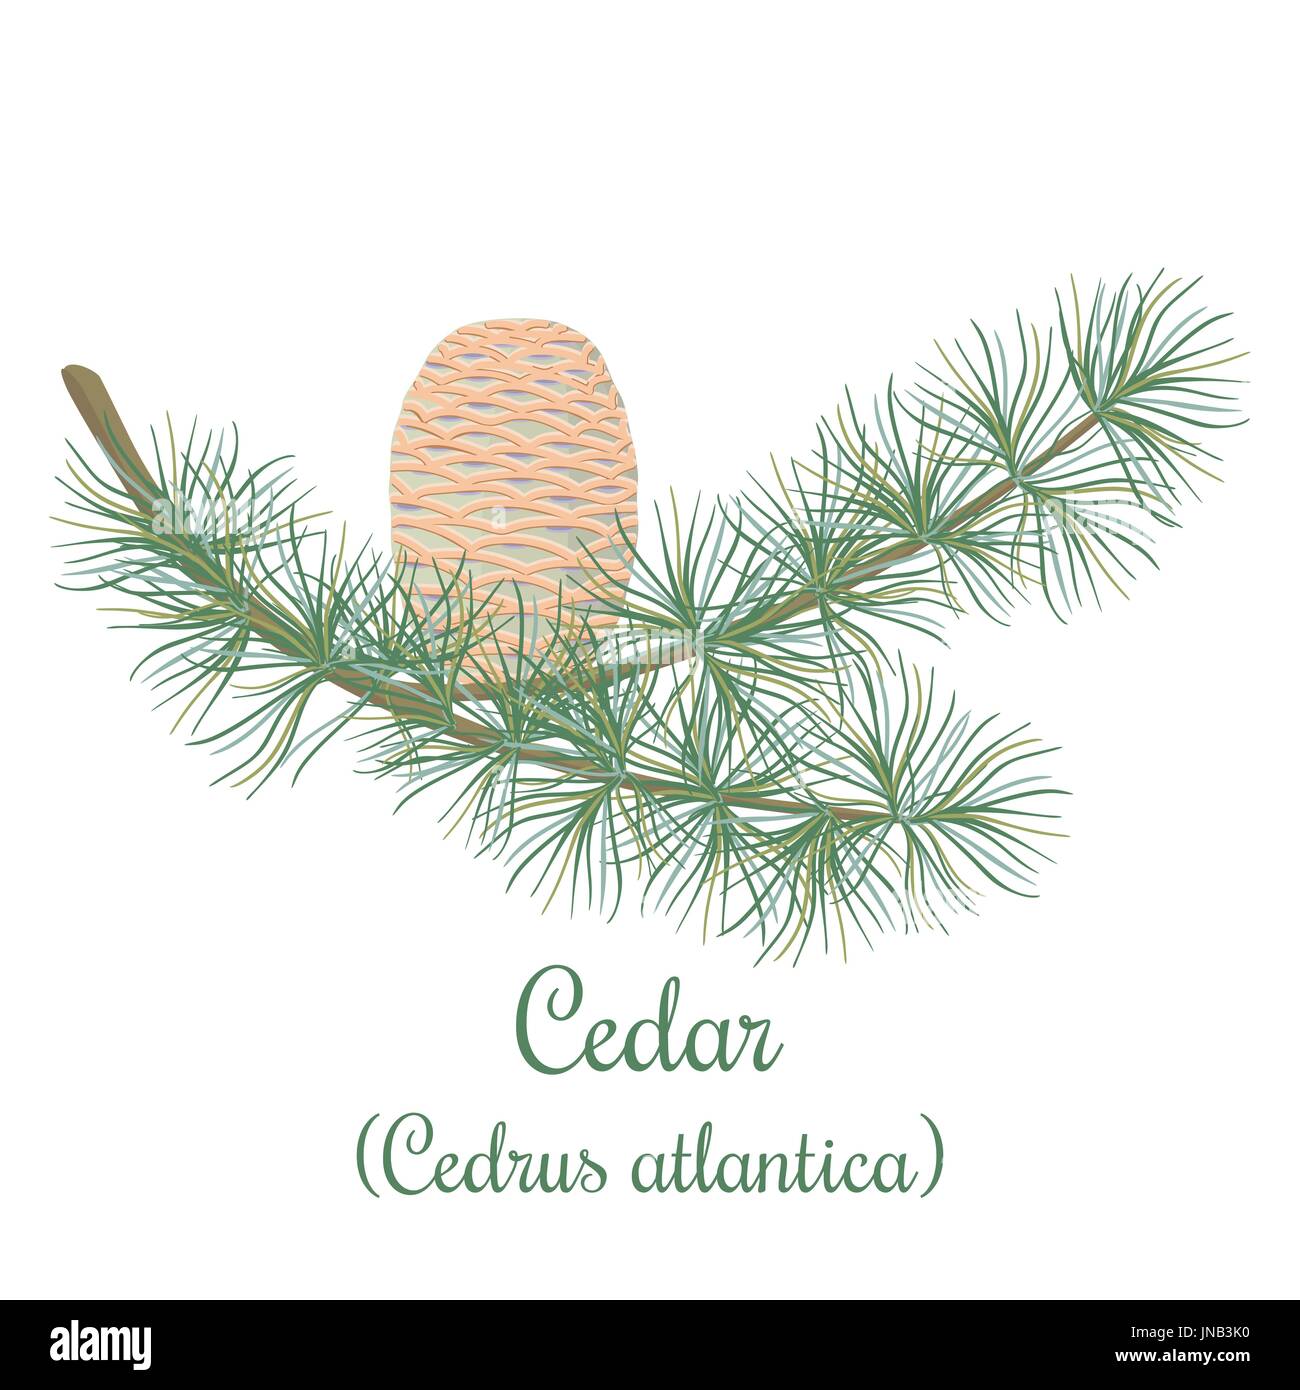 Cedar tree twig avec un cône. Branche verte de Cedrus atlantica. Vector illustration pour l'étiquette, poster, spa, la conception, les cosmétiques, les soins de santé naturels prod Illustration de Vecteur